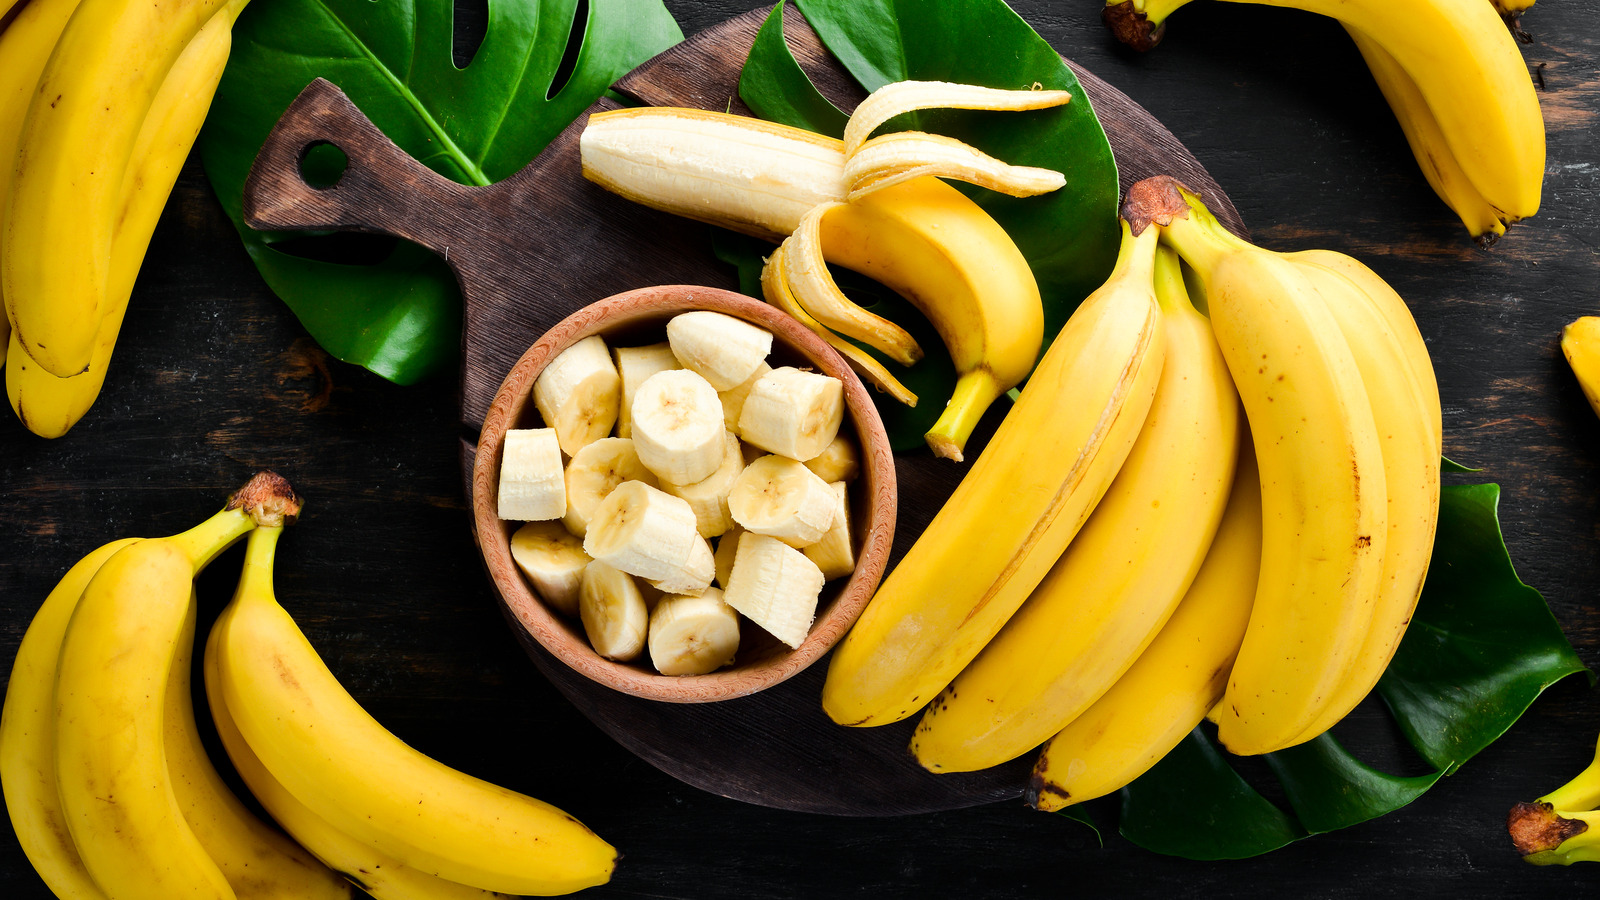 Orgulloso tarjeta Racional What Happens If You Refrigerate Bananas